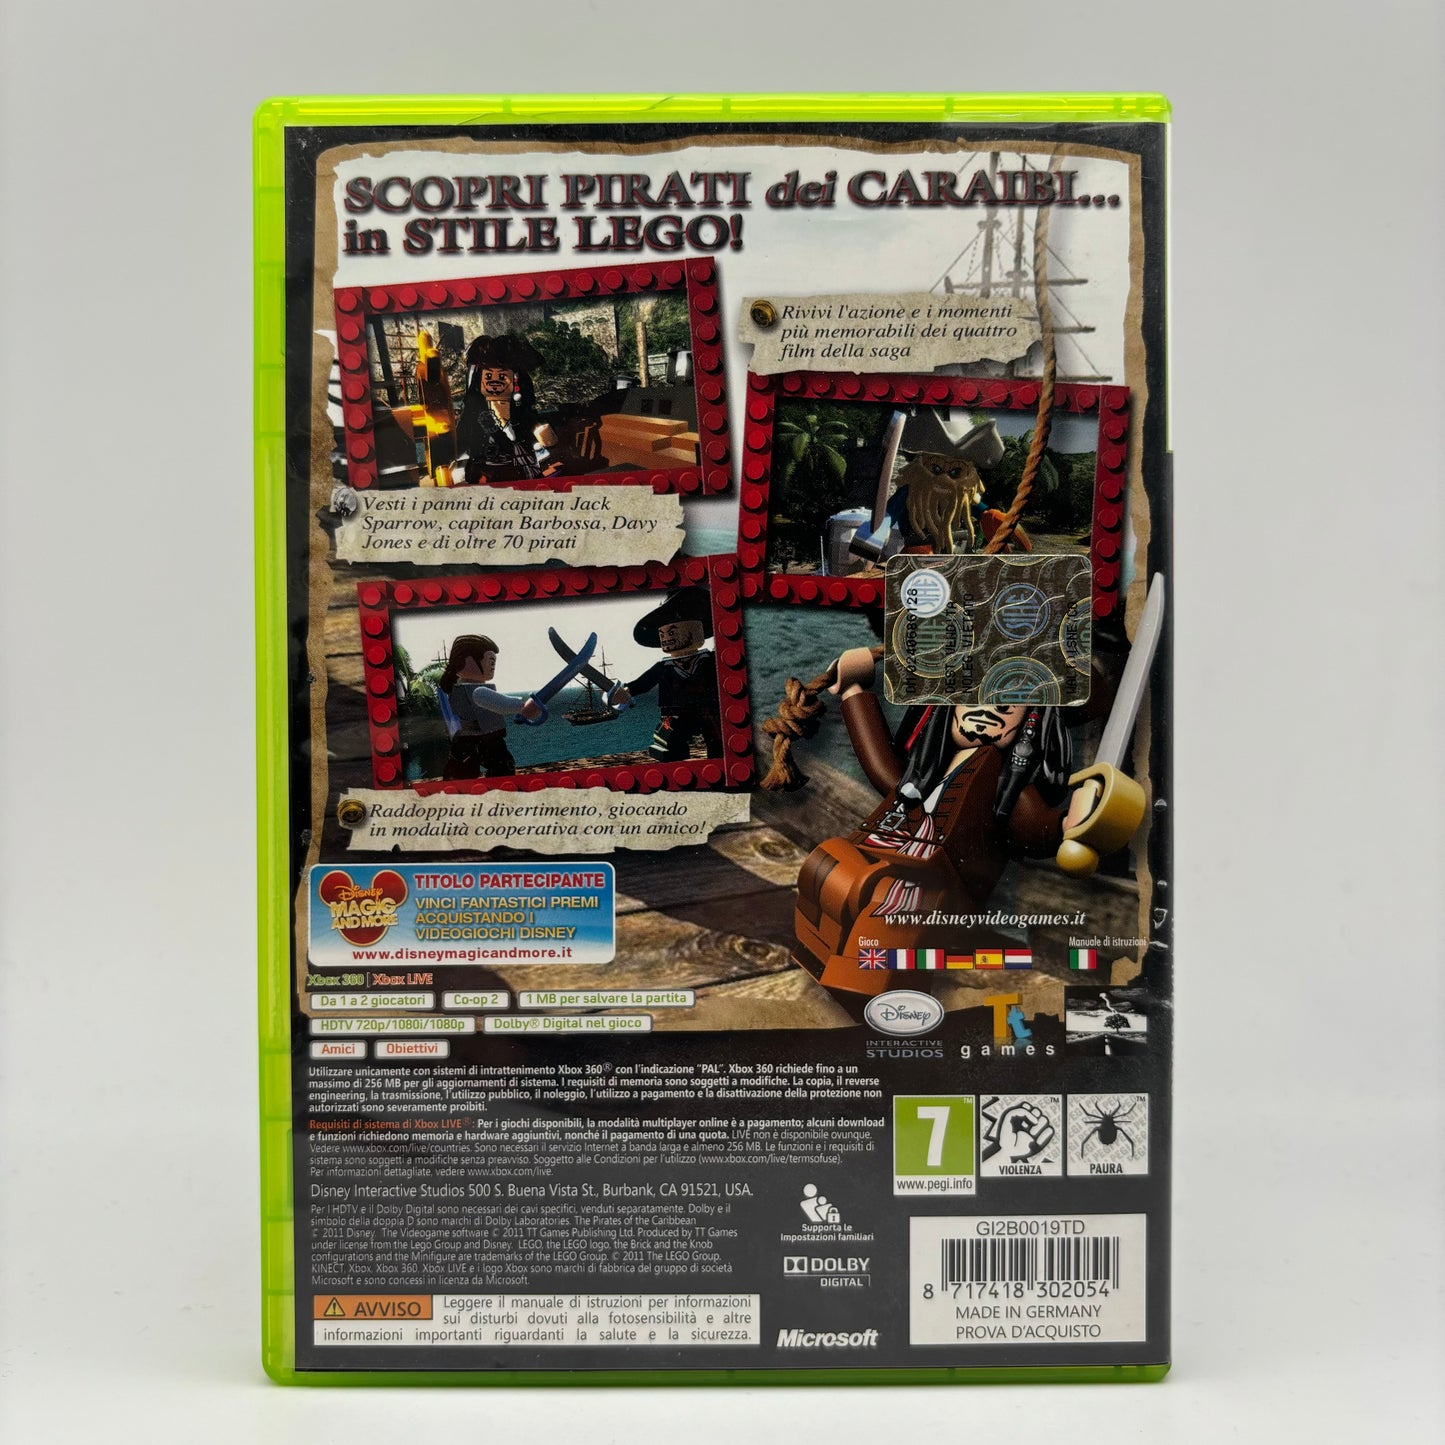 Lego Pirati dei Caraibi il Videogioco Xbox 360 Pal Ita (USATO)